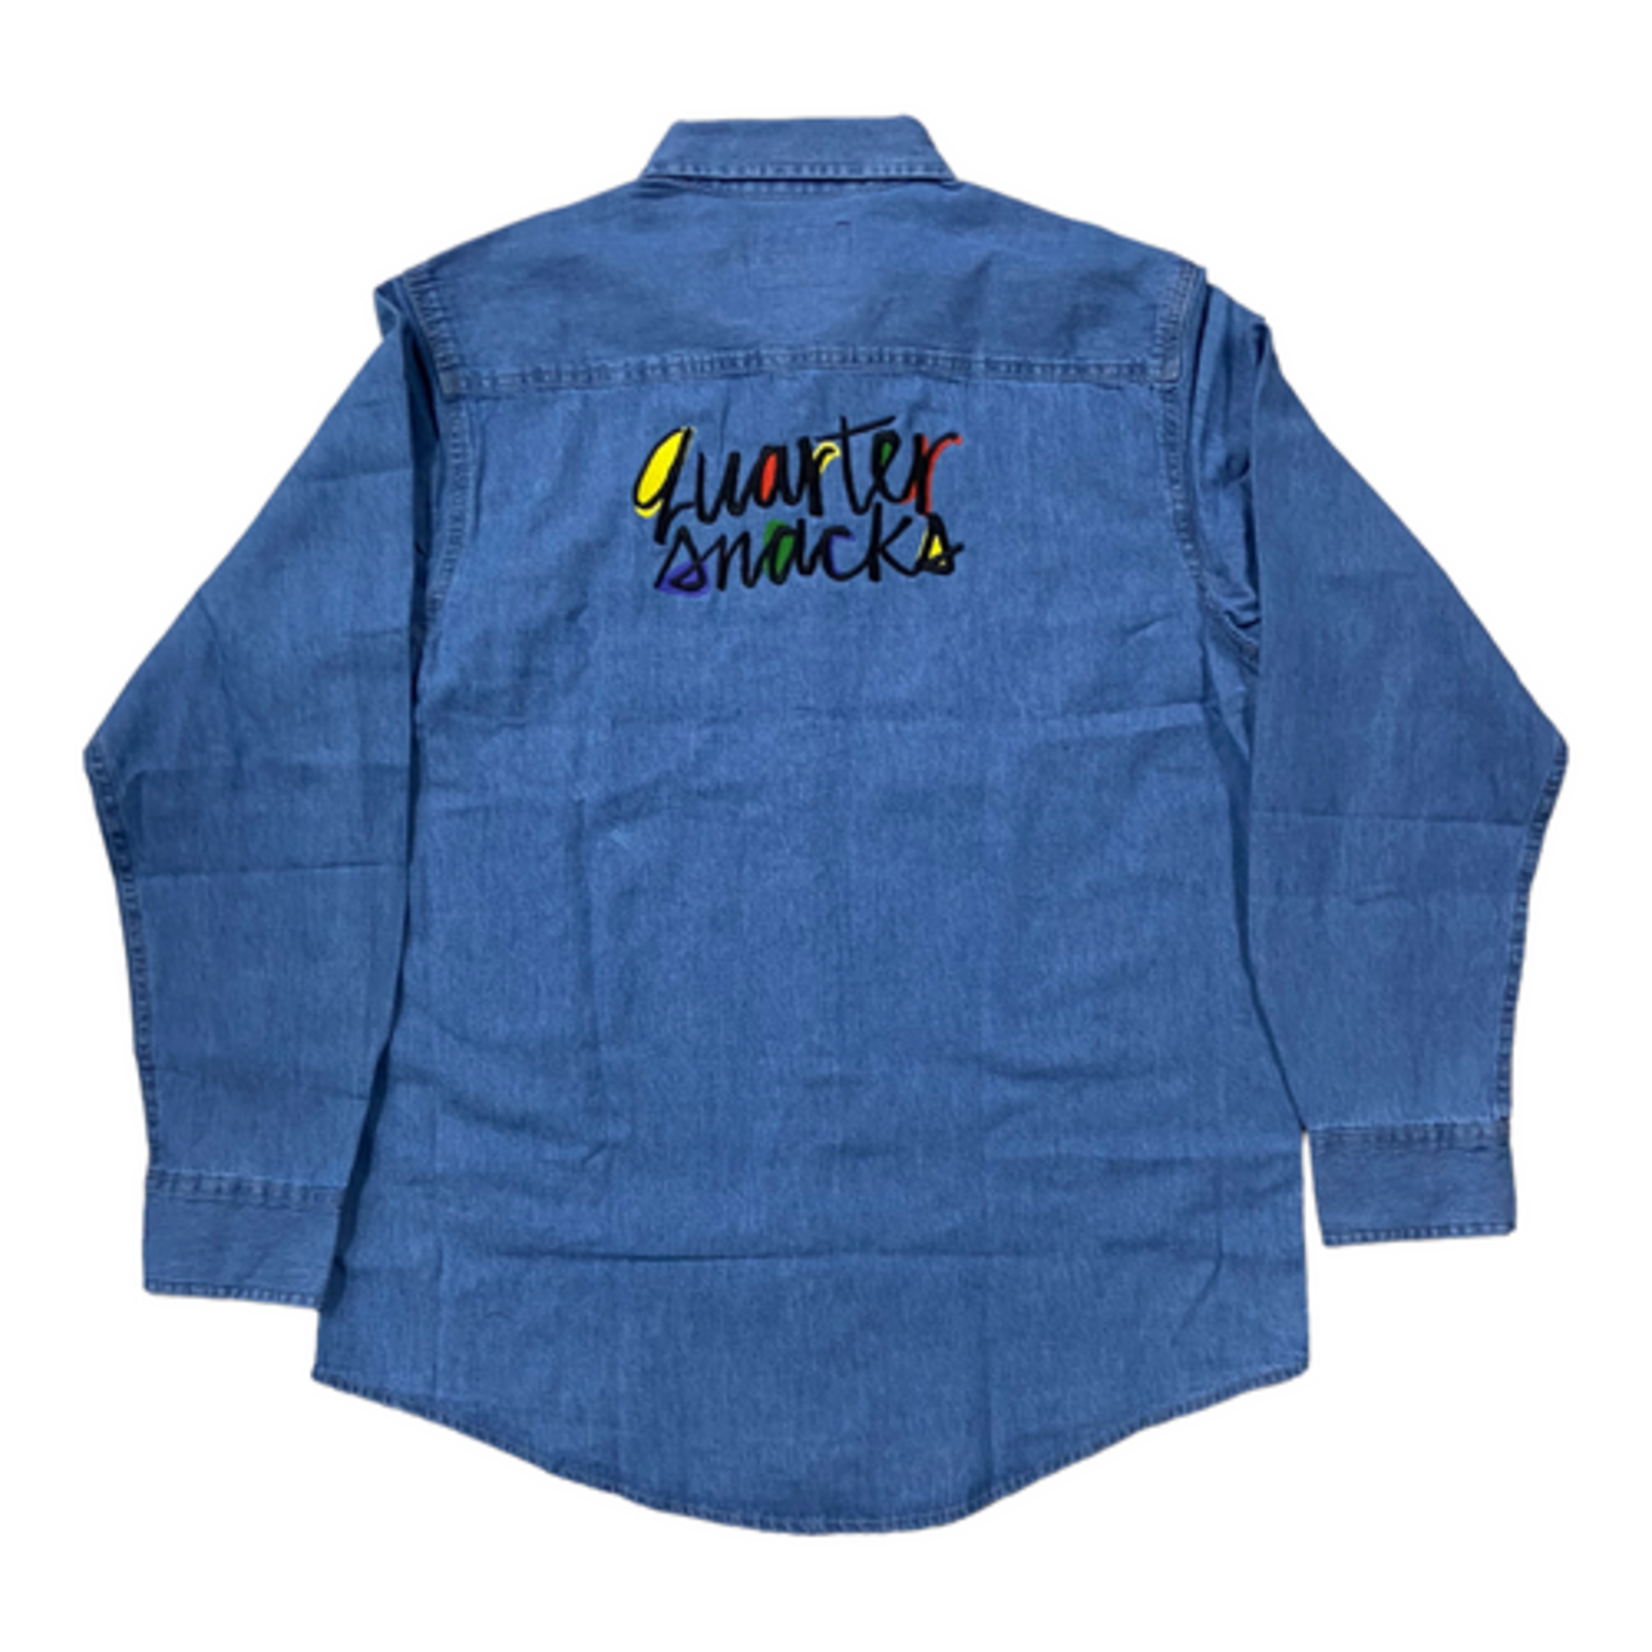 Quartersnacks Quartersnacks Pop Art Embroidered Denim Shirt